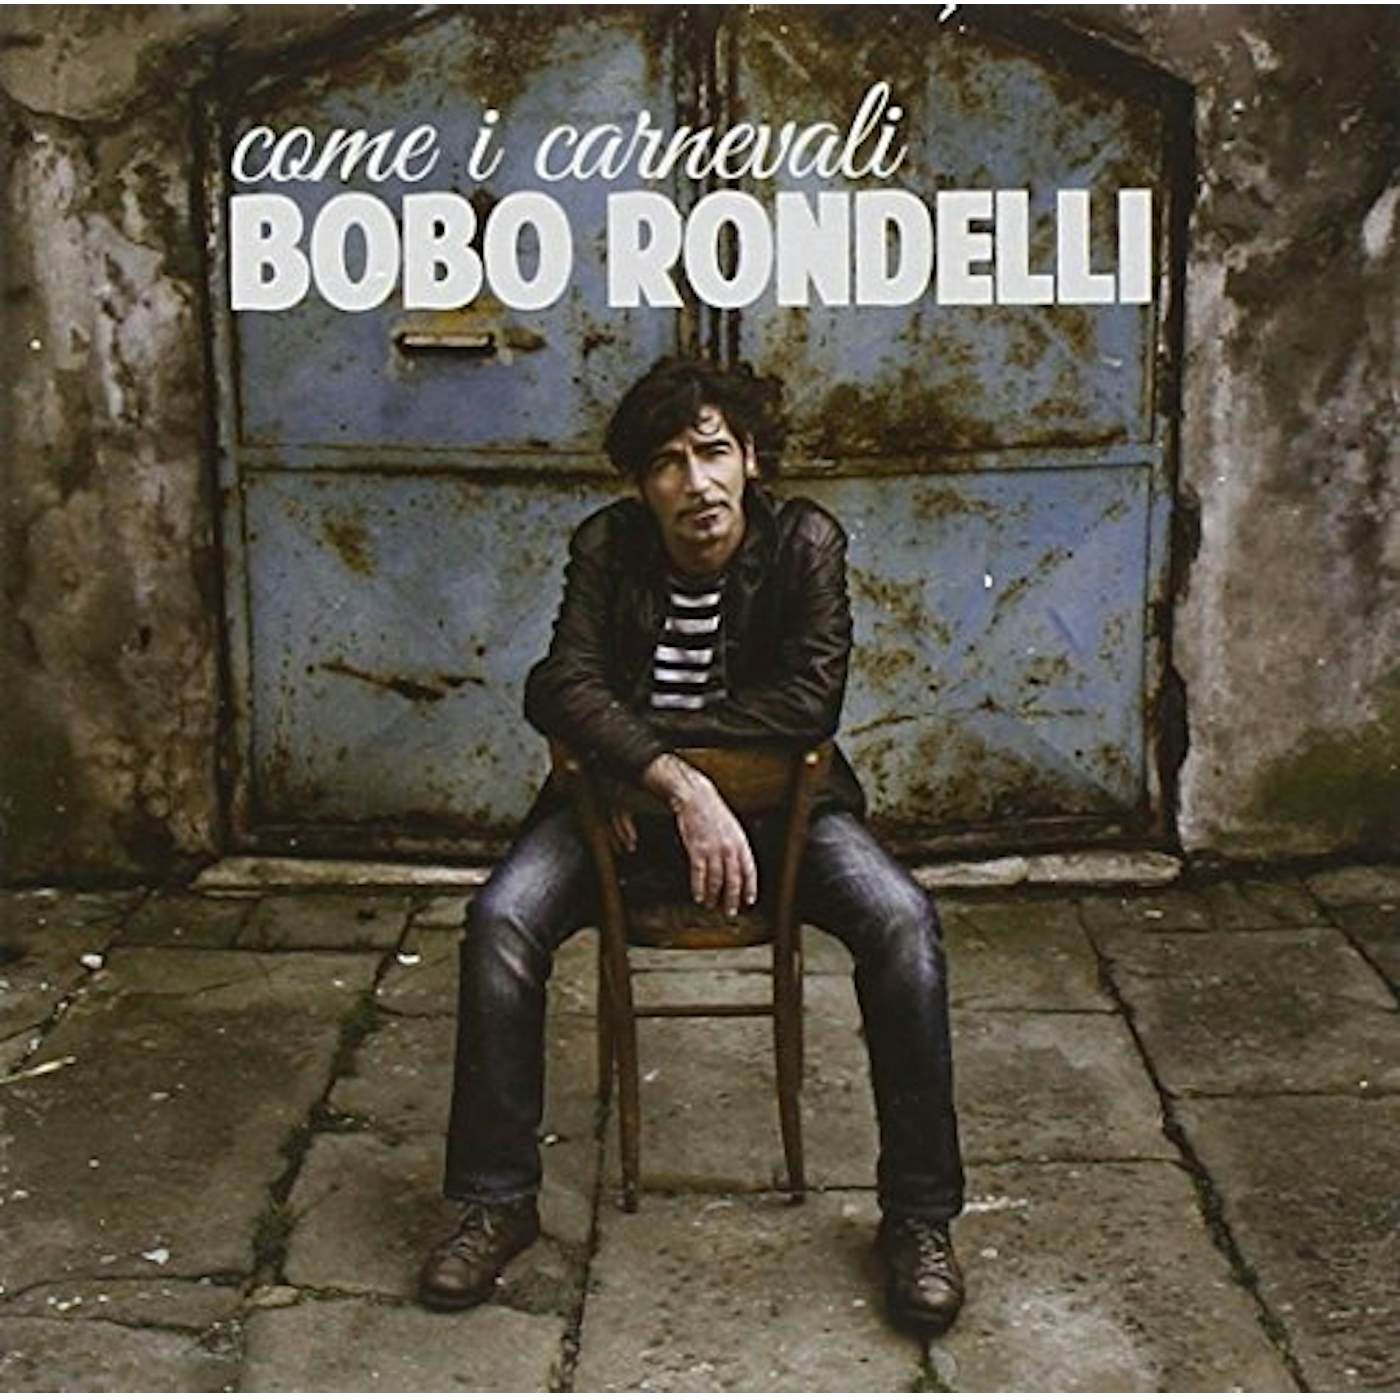 Bobo Rondelli COME I CARNEVALI CD